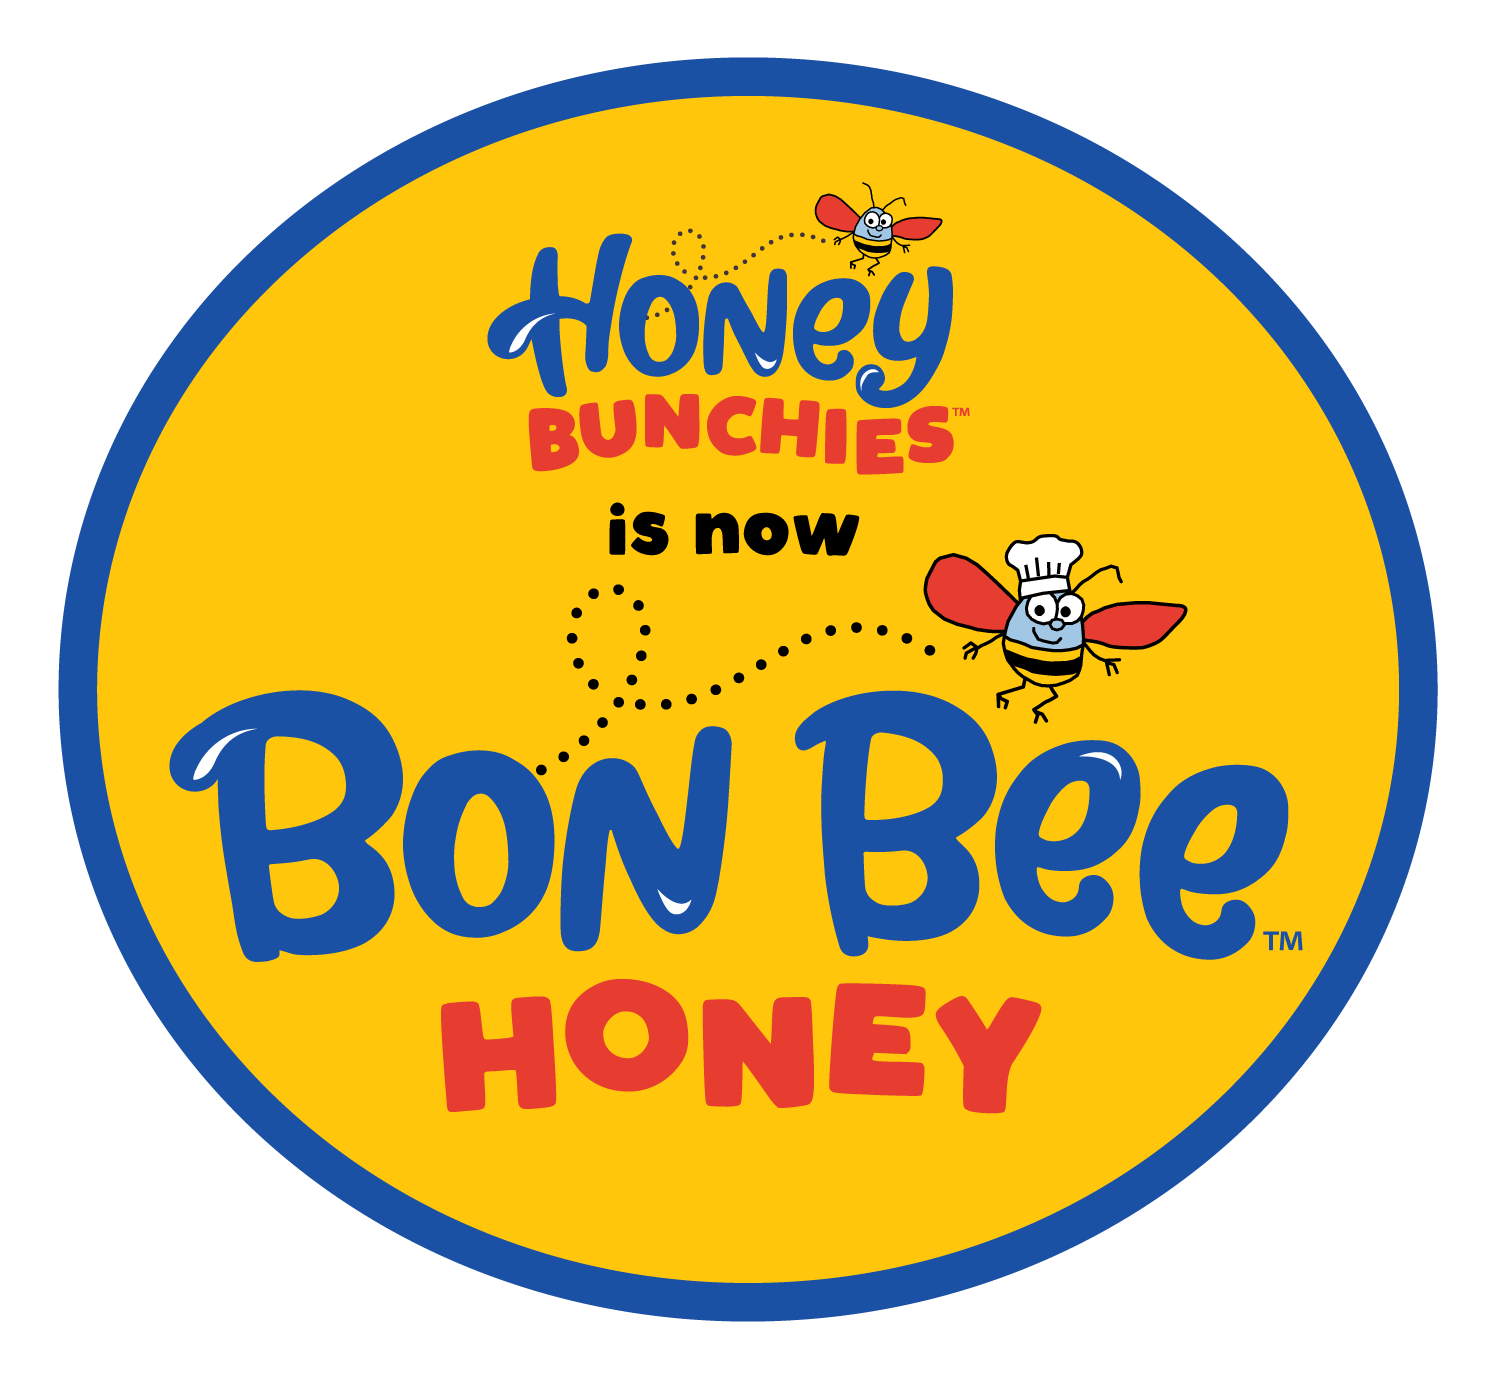 Bon Bee Gourmet Honey Bars, Peanut Pecan (previously known as Honey Bunchies) Honey Bar Honey Bunchie, LLC 